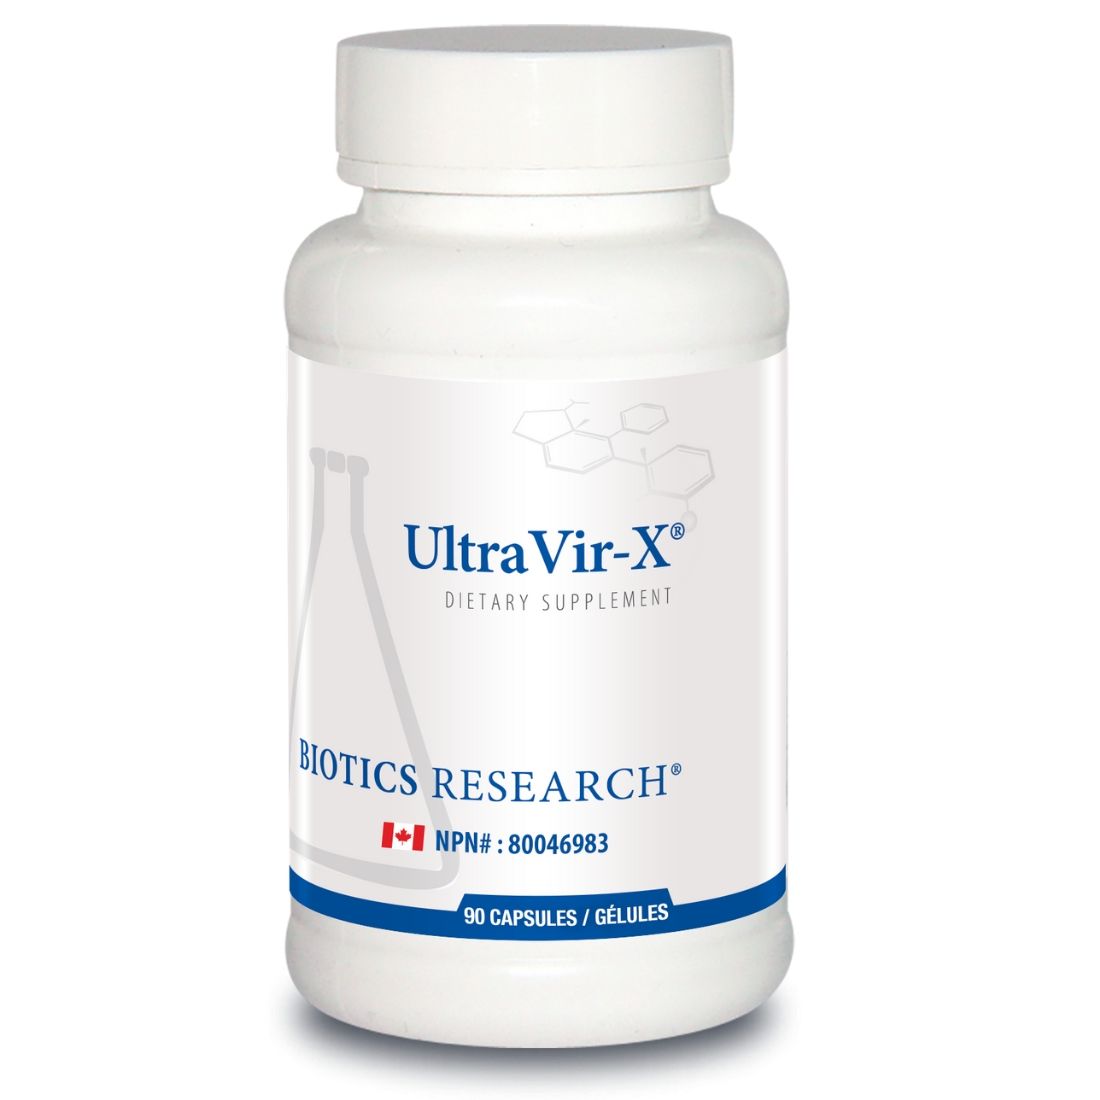 Biotics Research UltraVir-X (May help activate AMPK), 90 Capsules